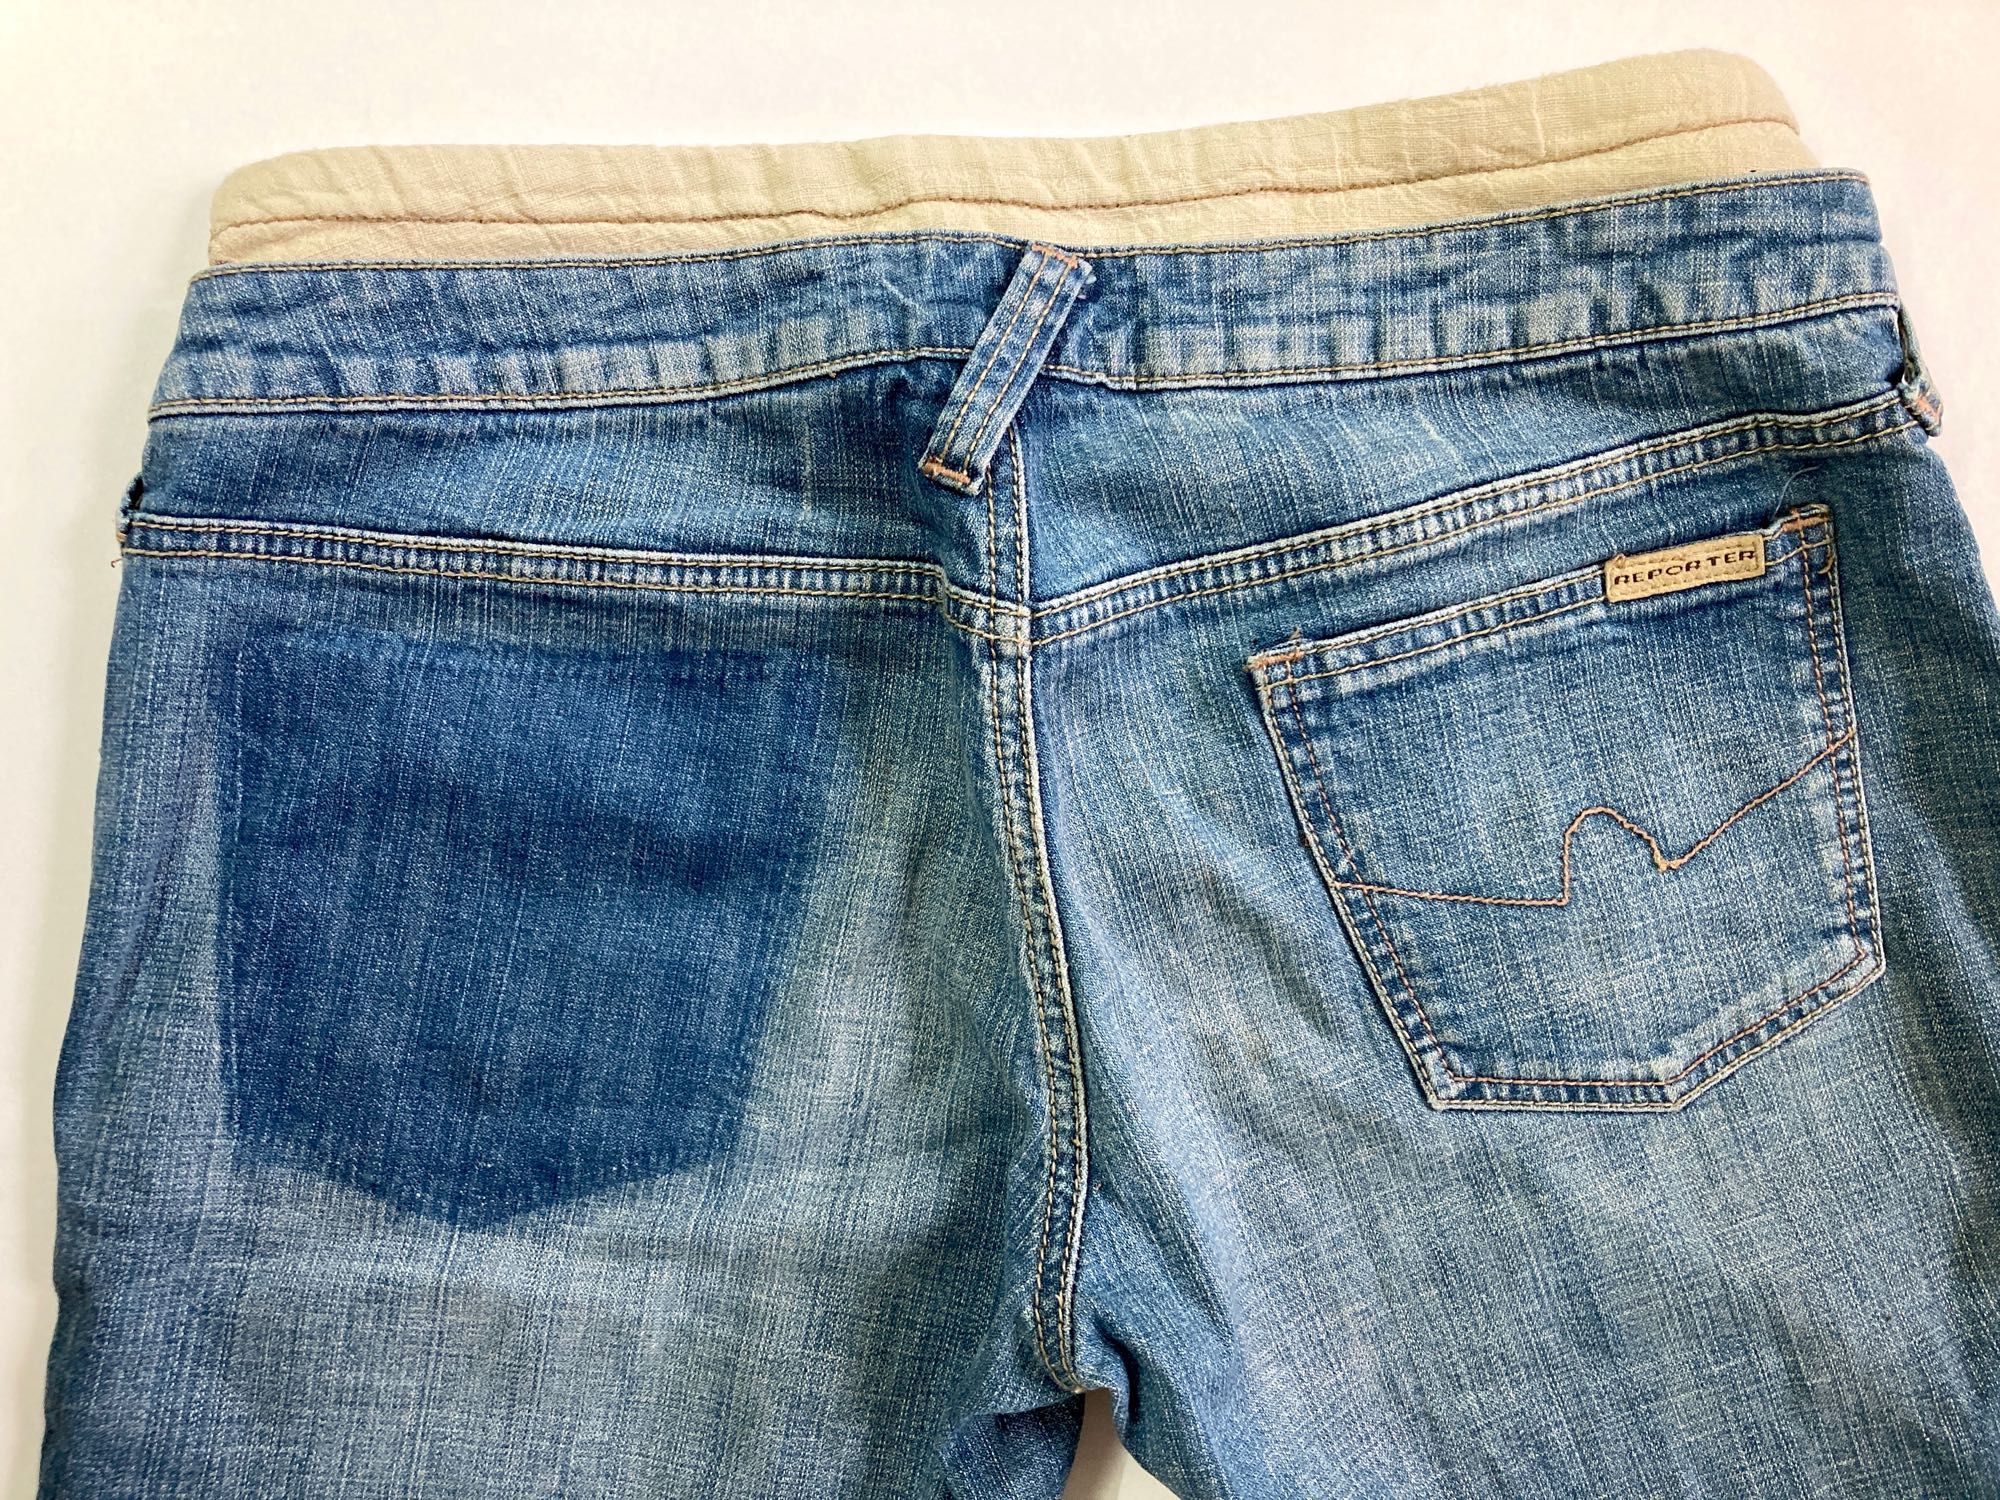 Spodnie damskie rybaczki jeans używane L do łydki REPORTER